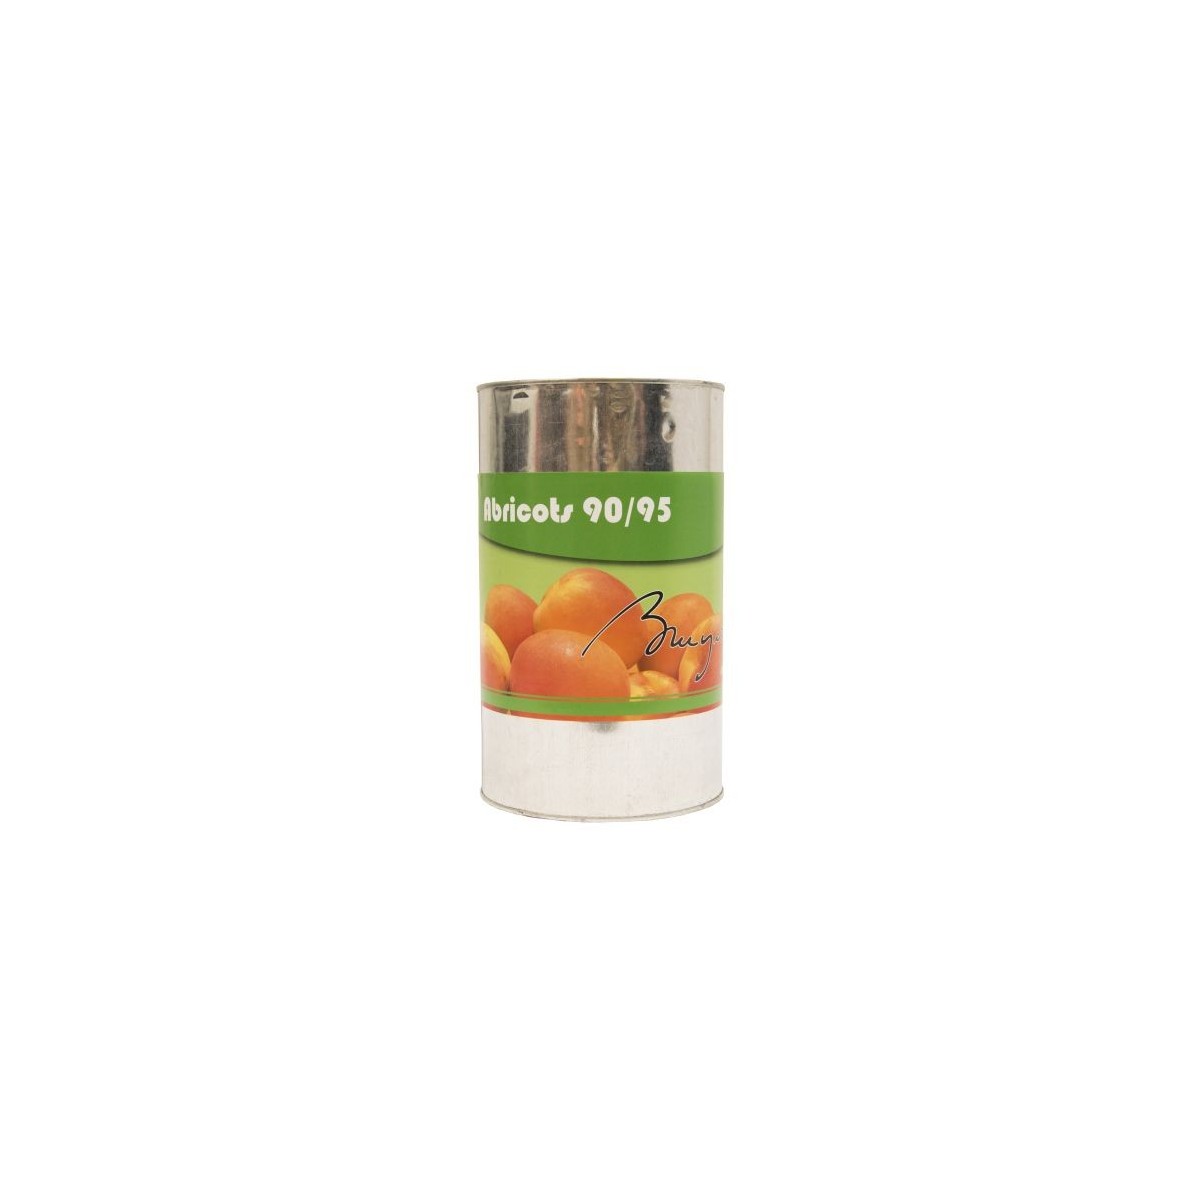 Abricot 90/95% 6 x 5kg